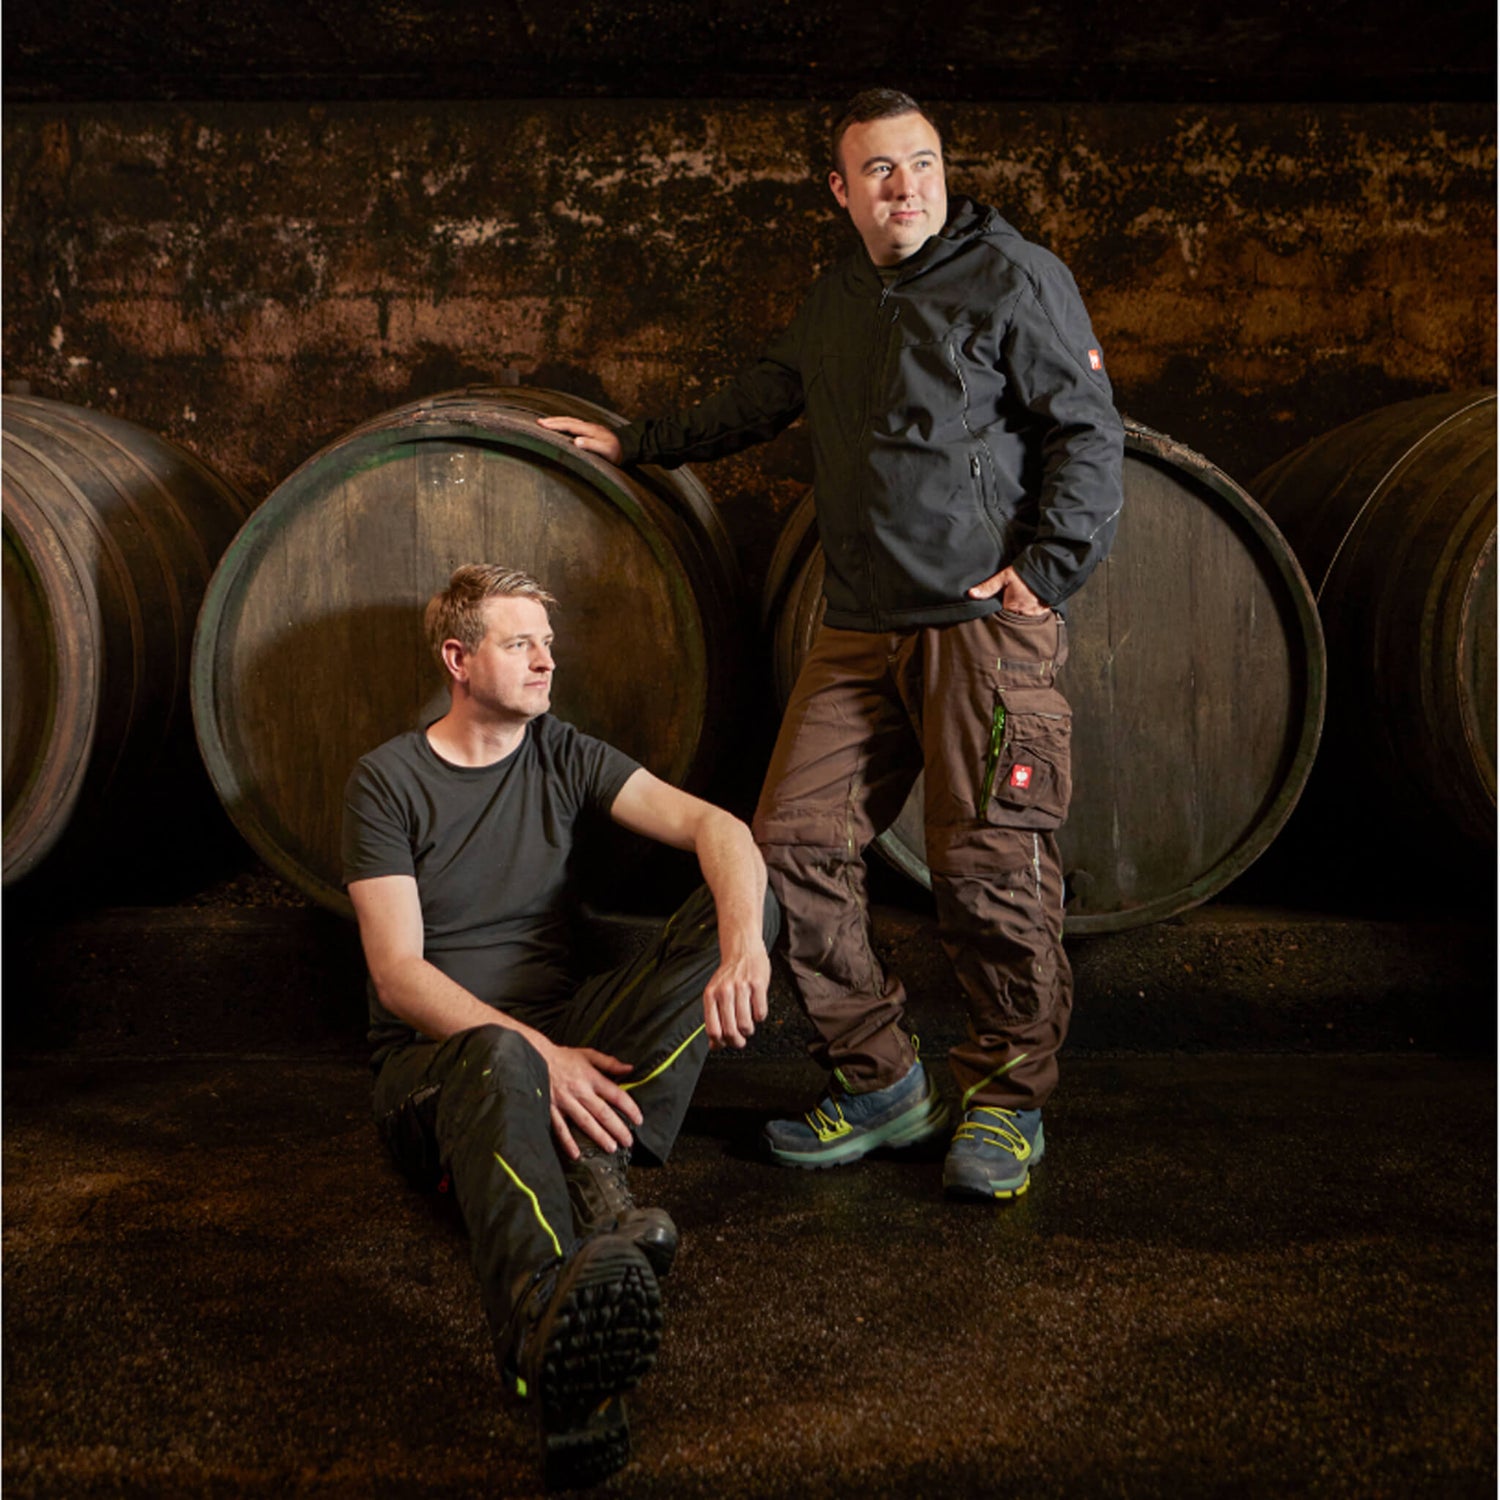 Corvin Prigge und Florian Maring vor Holzfuderfässern sitzen / stehen im Weinkeller